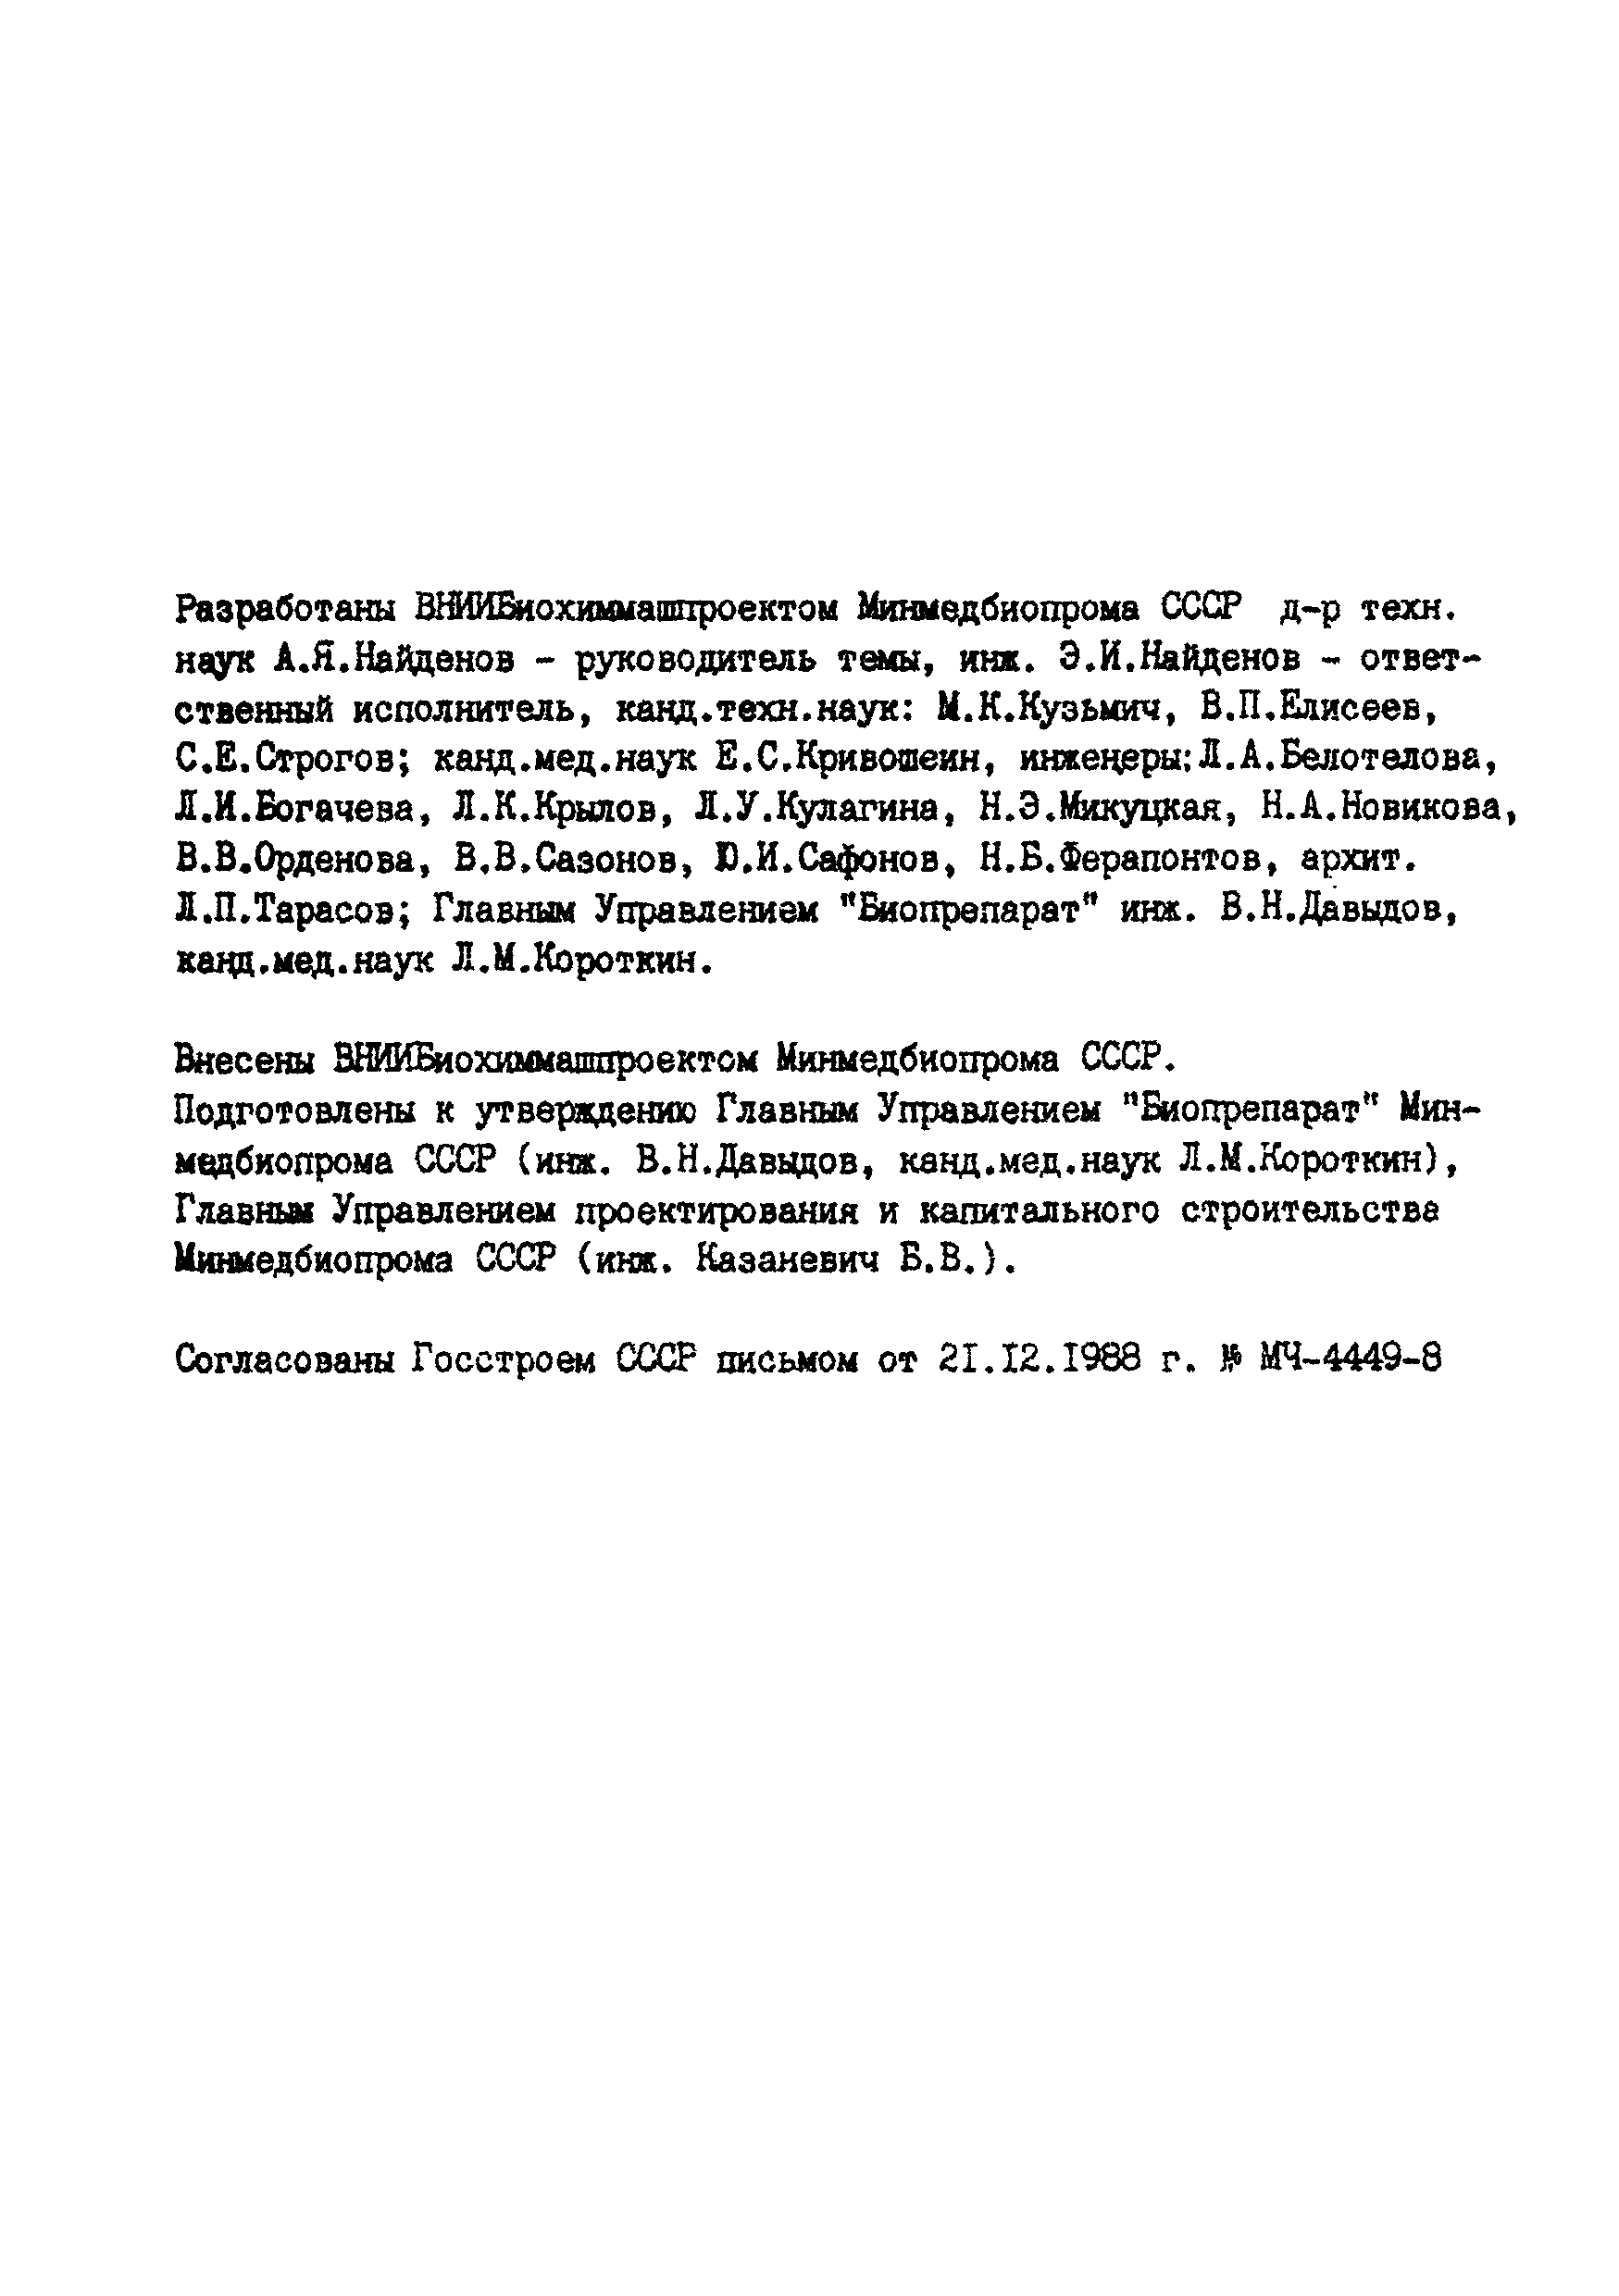 ВСН 64-064-88